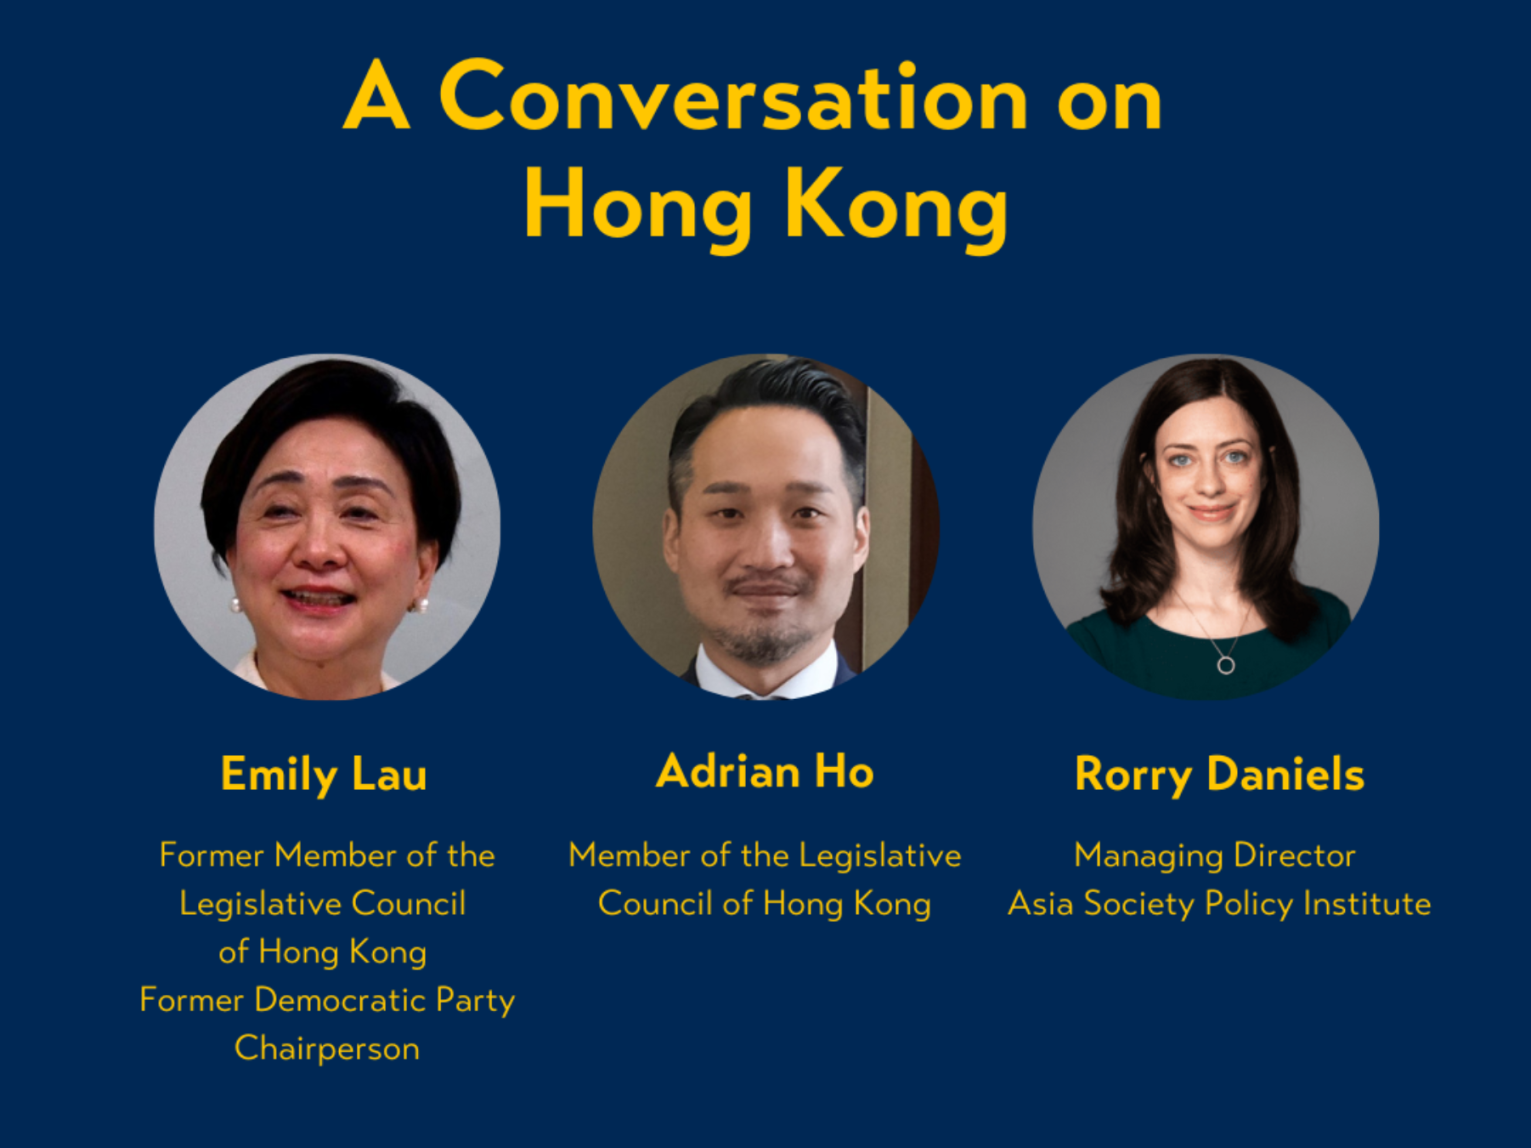 A conversation on Hong Kong